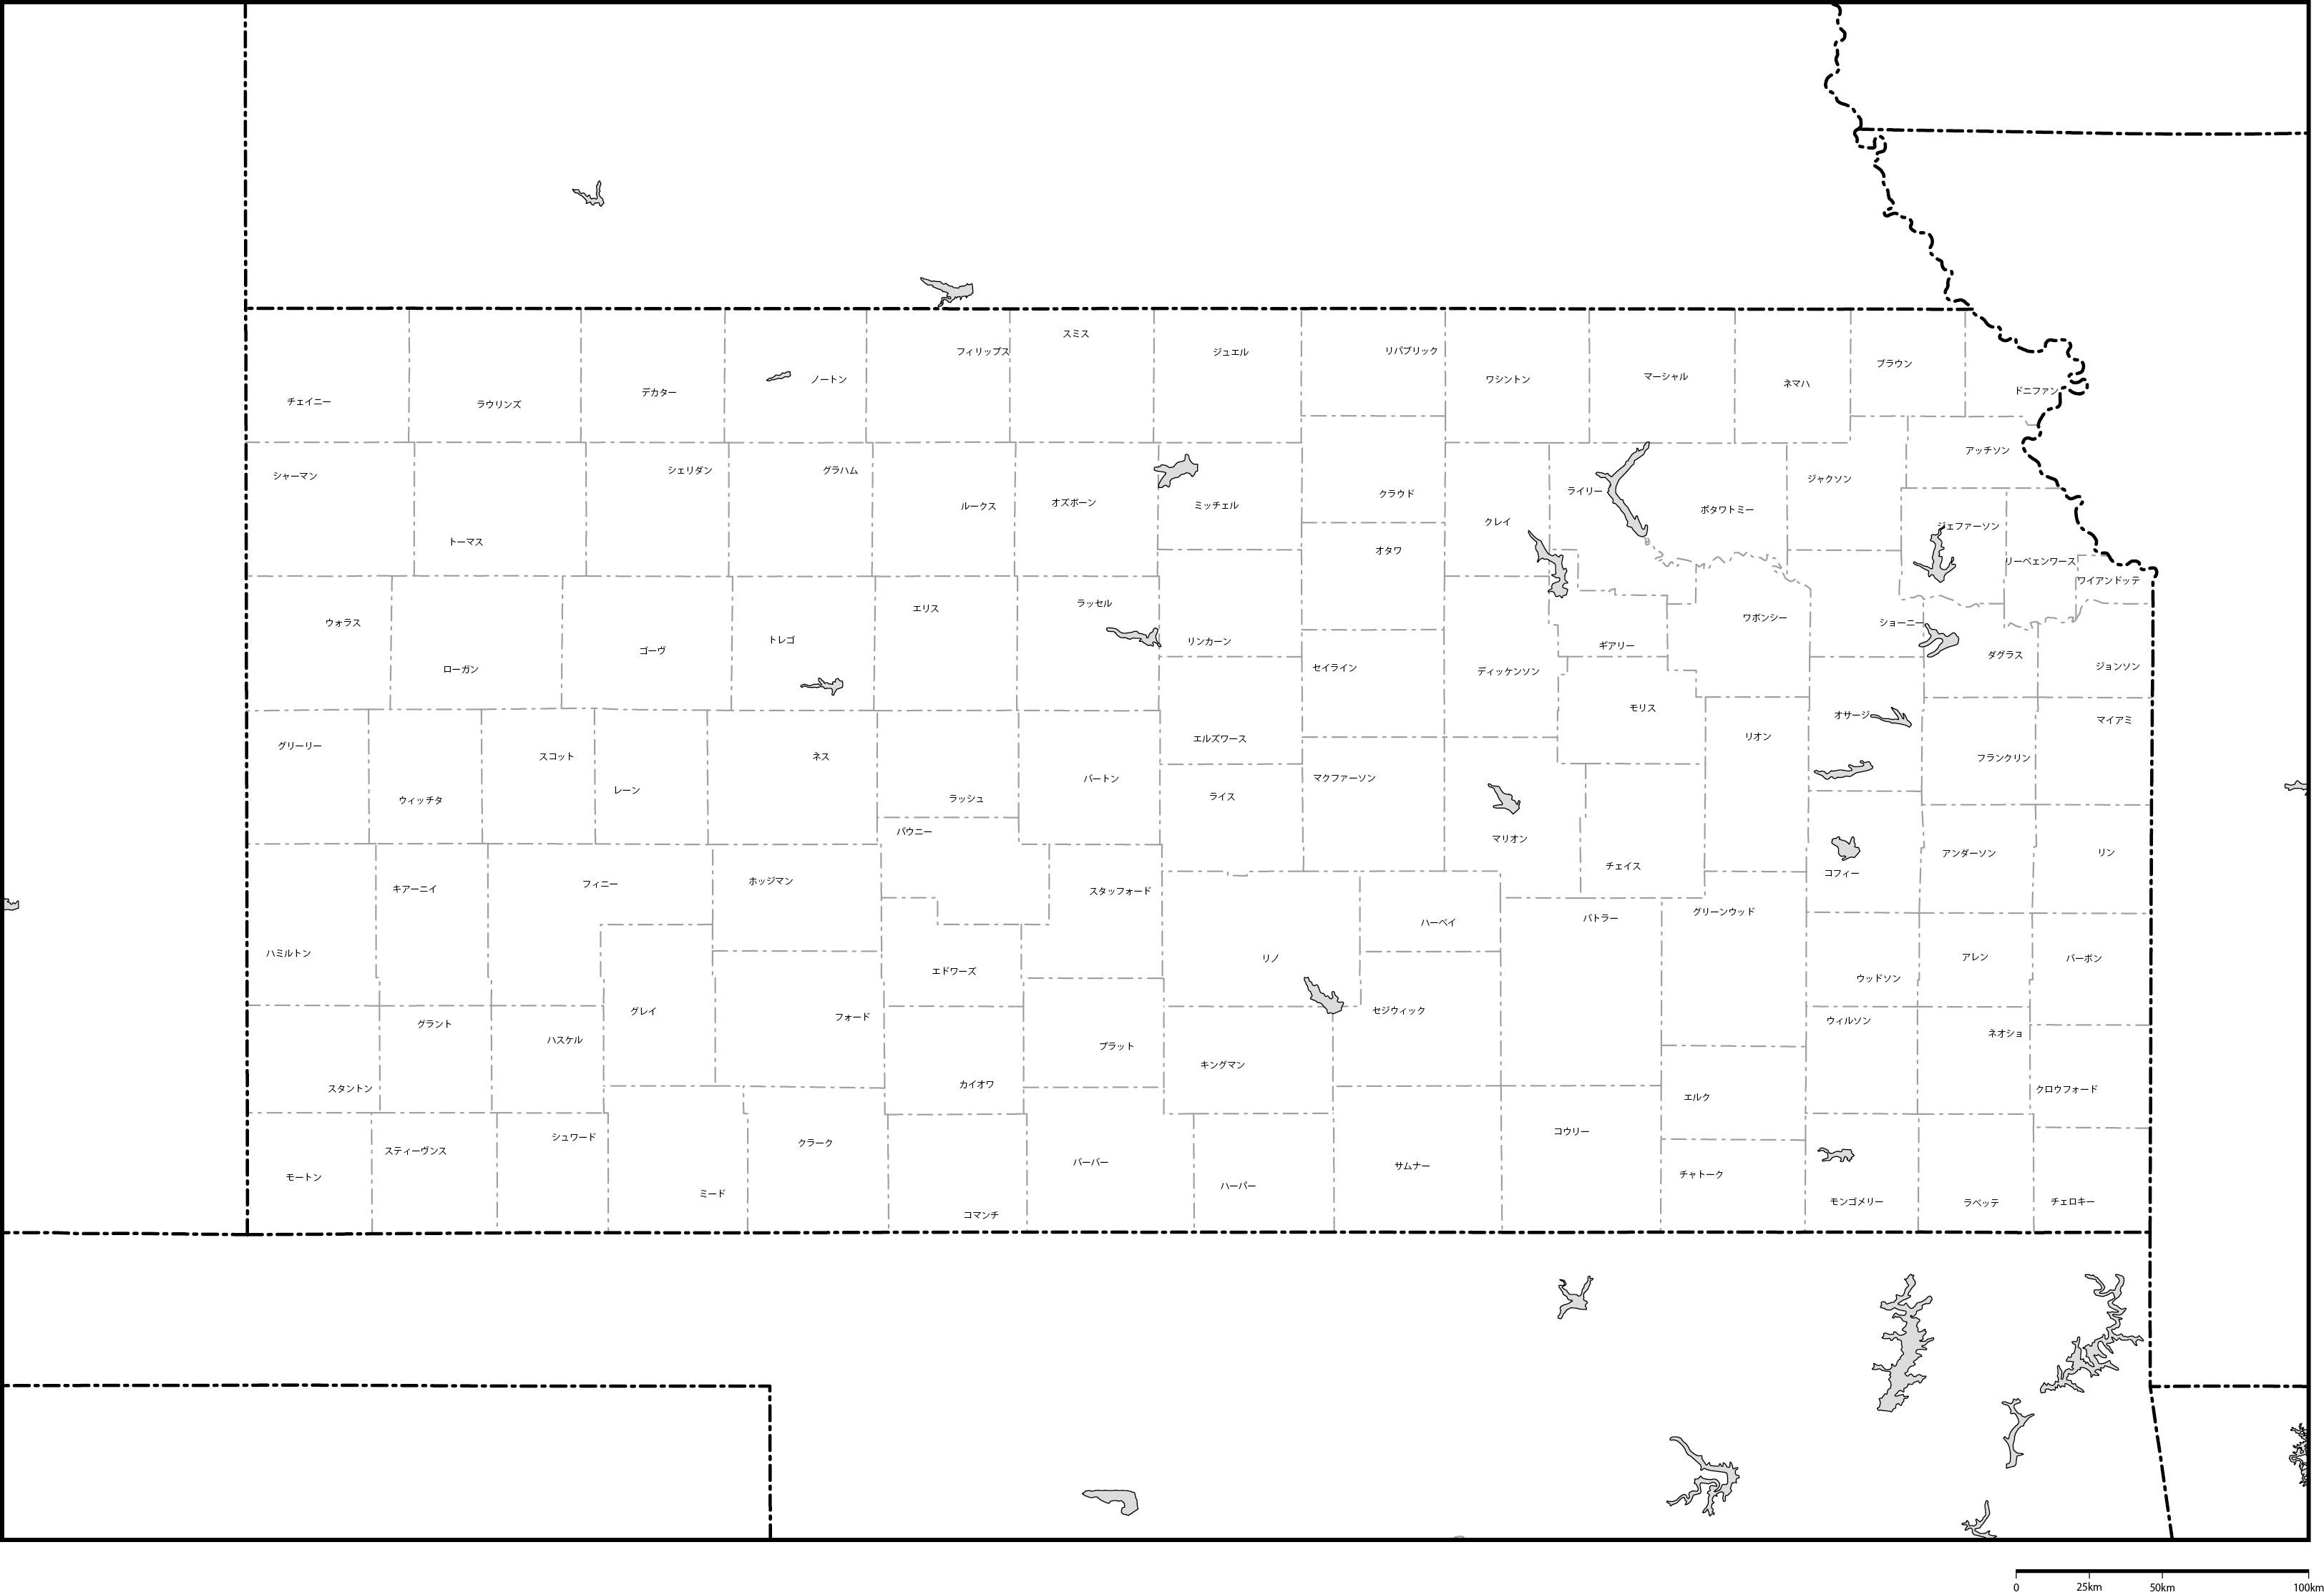 カンザス州郡分け地図郡名あり(日本語)フリーデータの画像